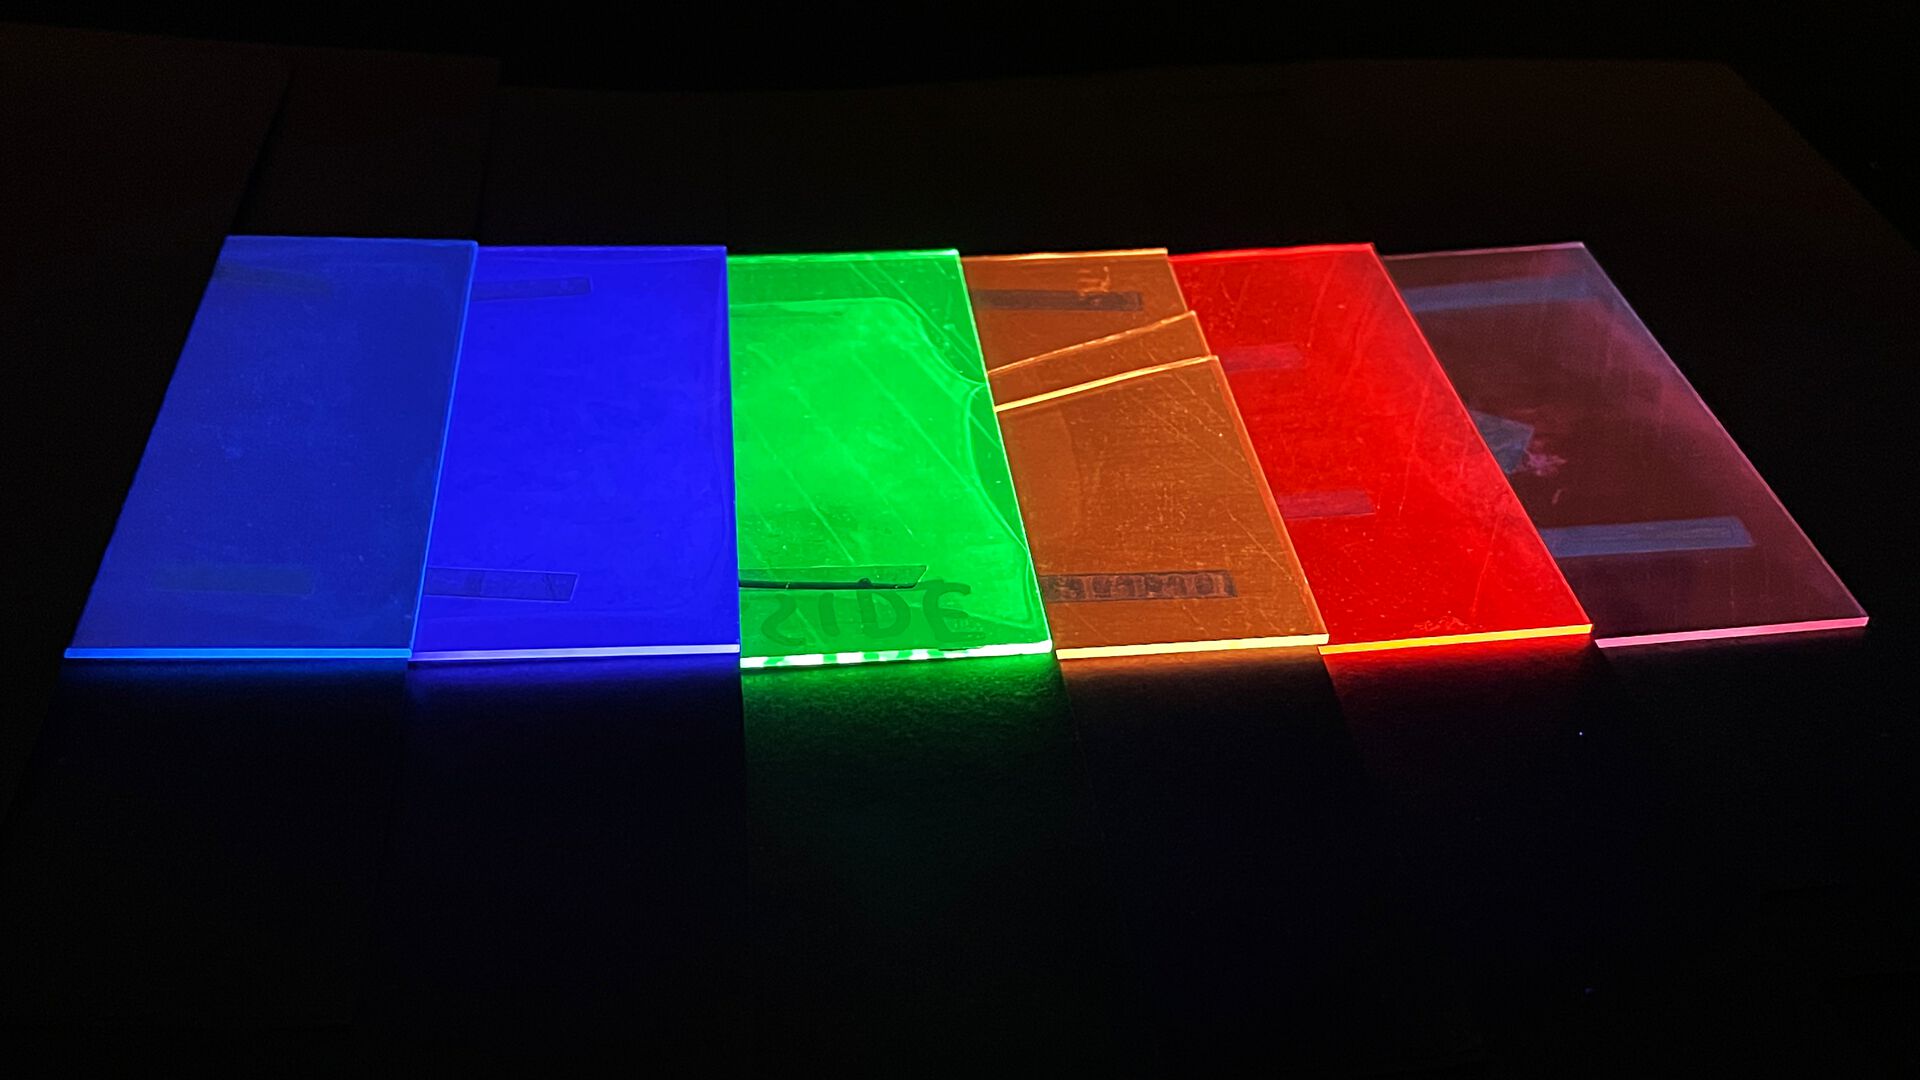 Ulike glassplater som er belagt med stoffer som konverterer UV-lys til synlig lys i ulike farger